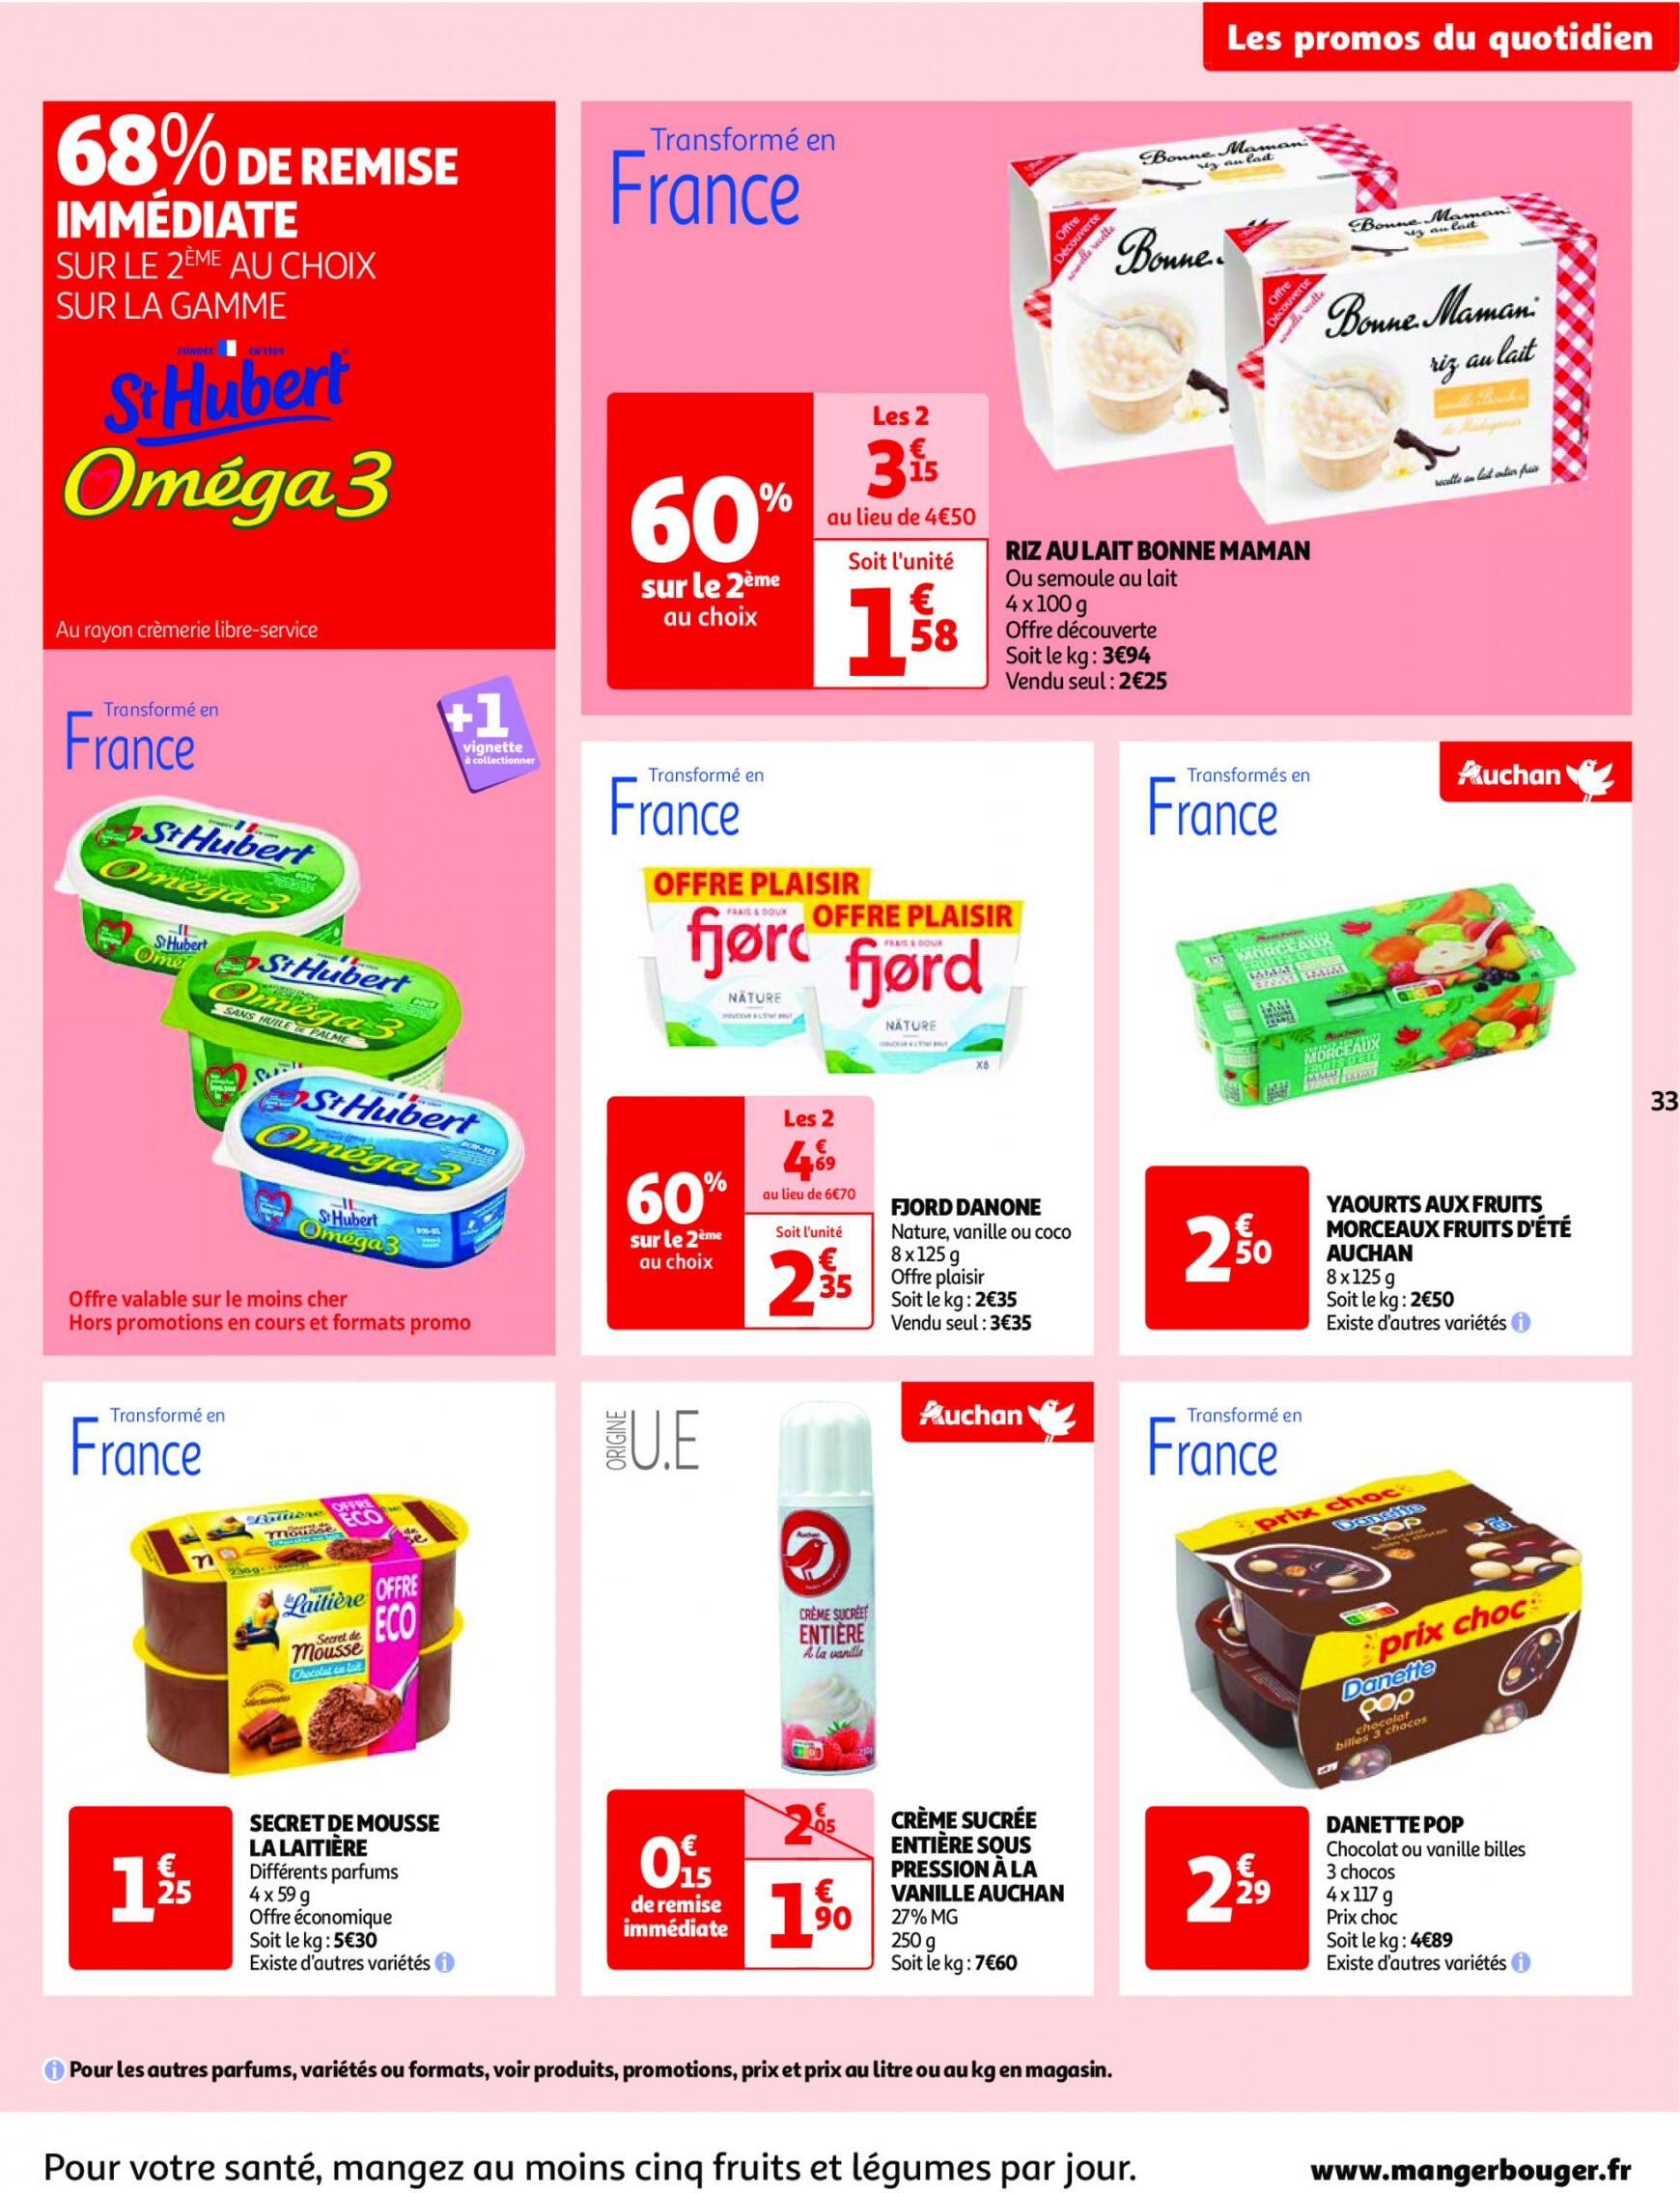 auchan - Prospectus Auchan actuel 14.05. - 21.05. - page: 33